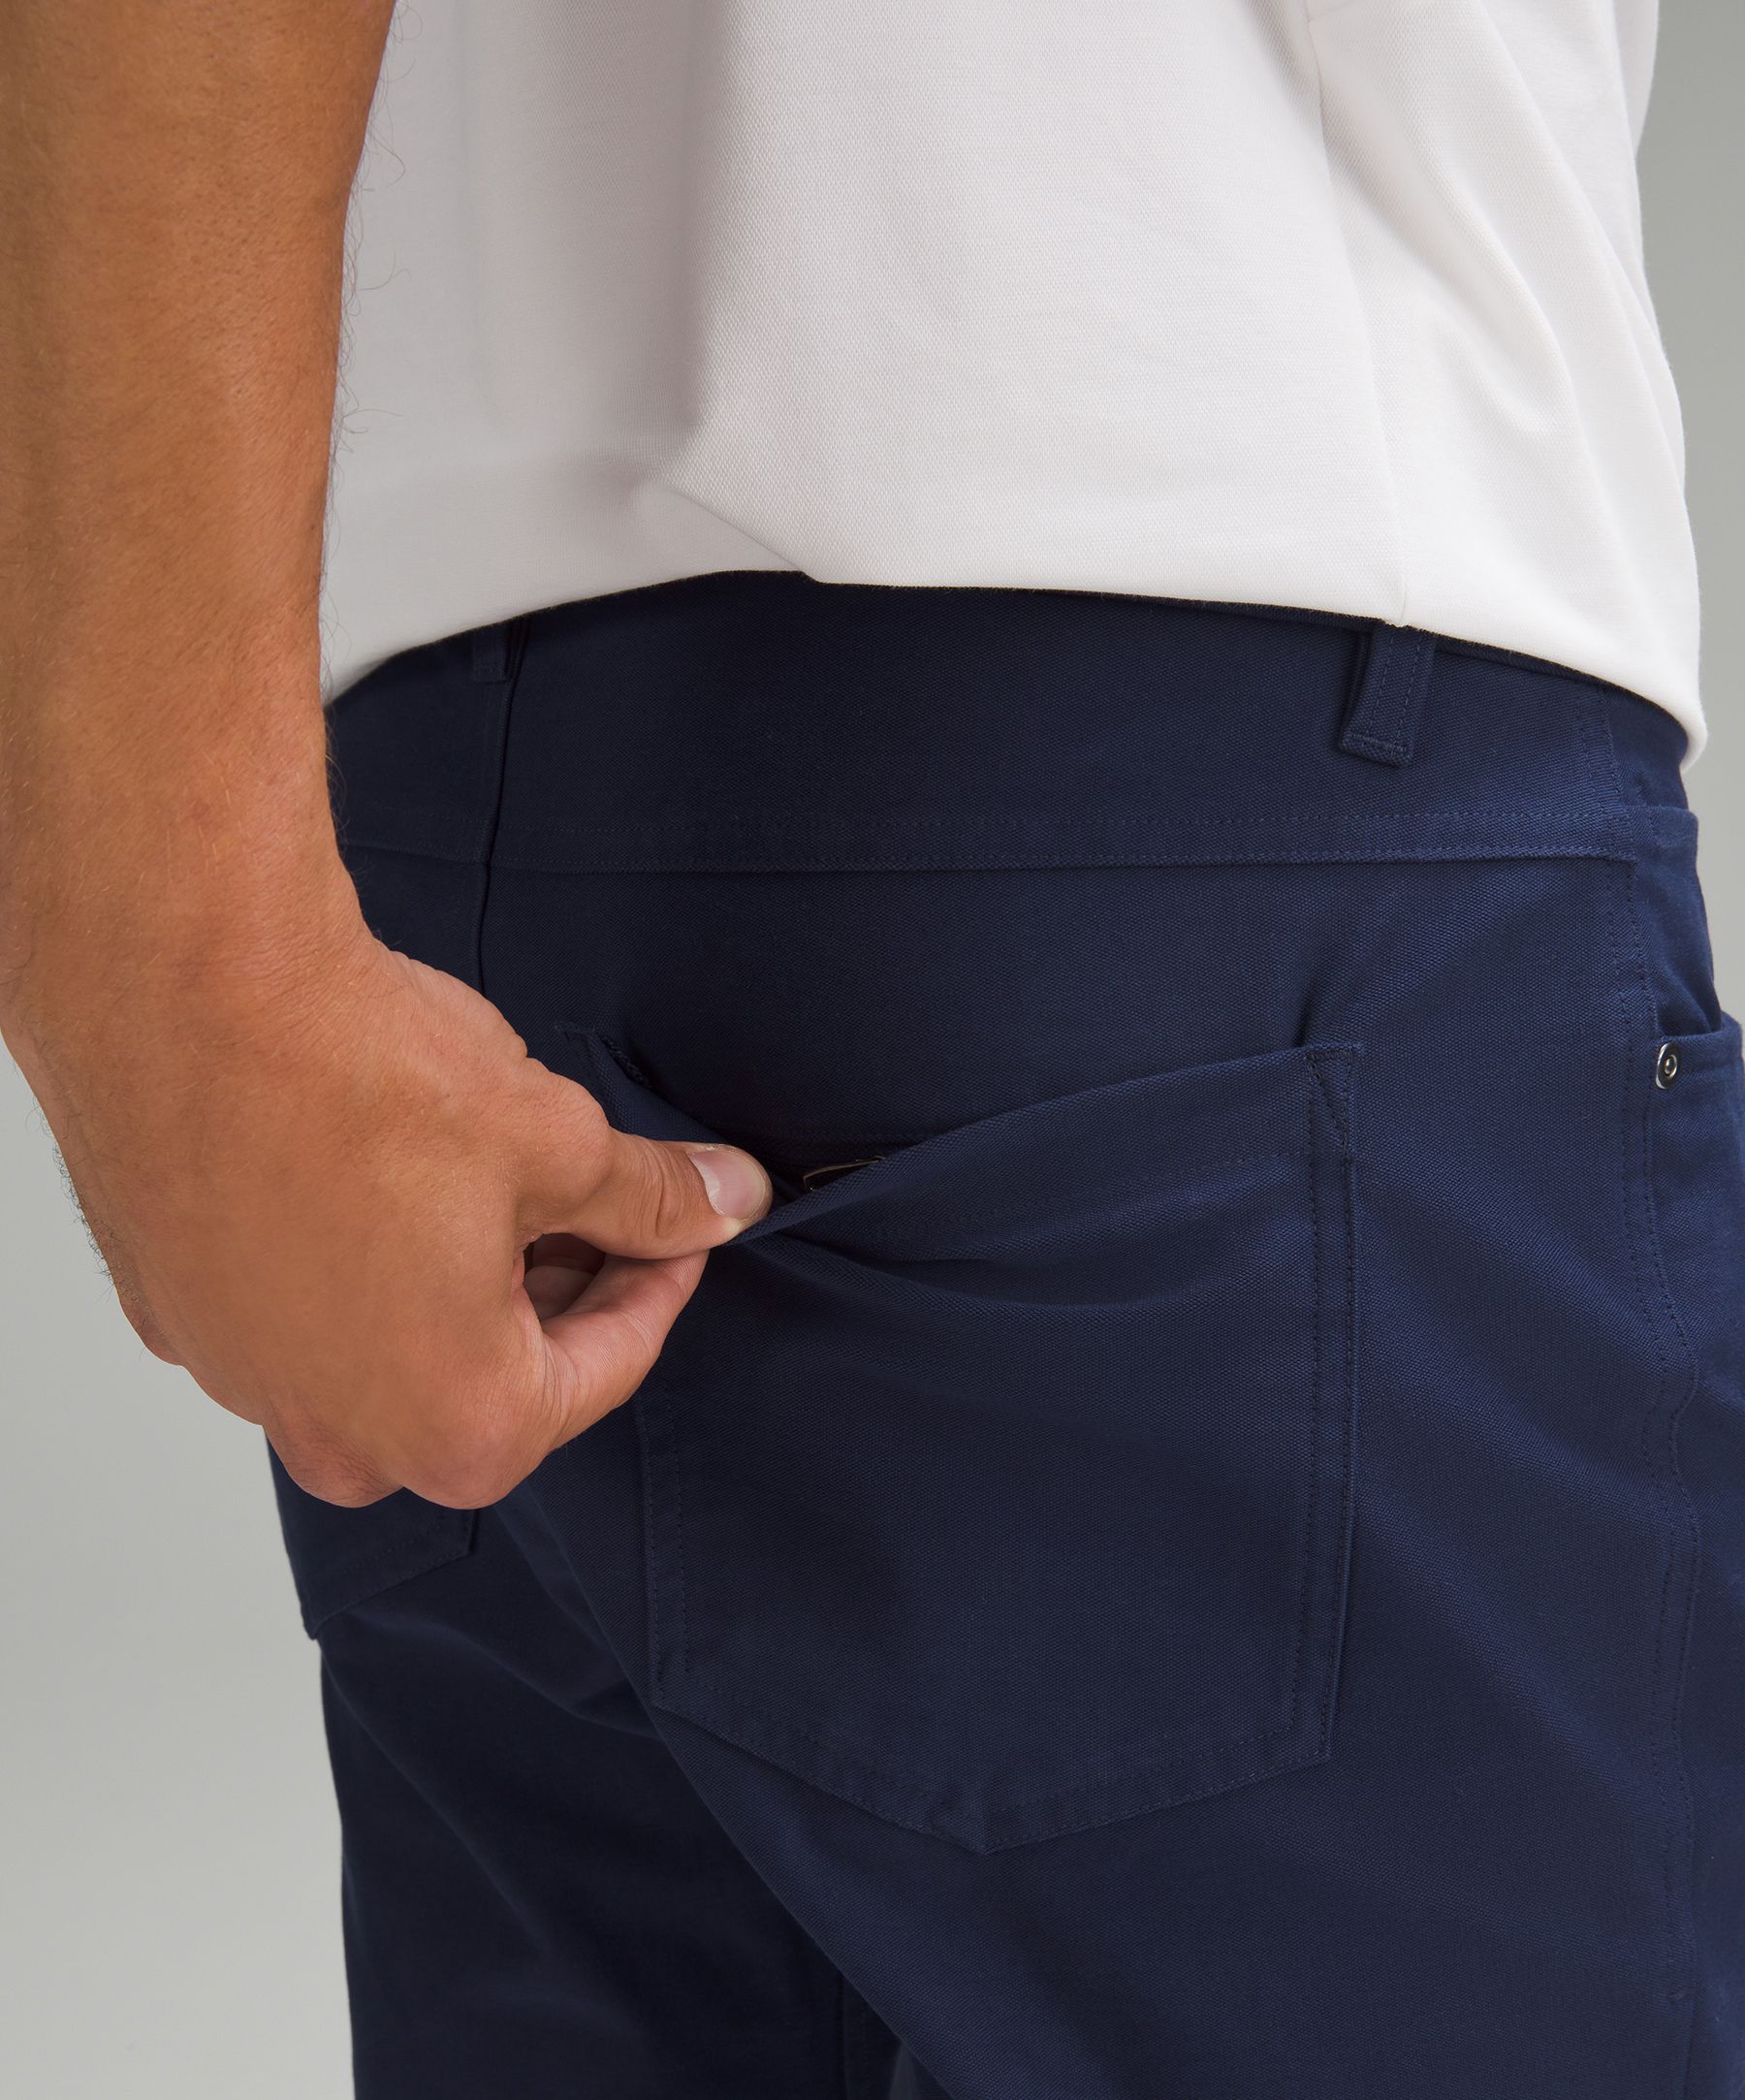 ABC Slim-Fit 5 Pocket Pant 34L *Utilitech, Men's Trousers